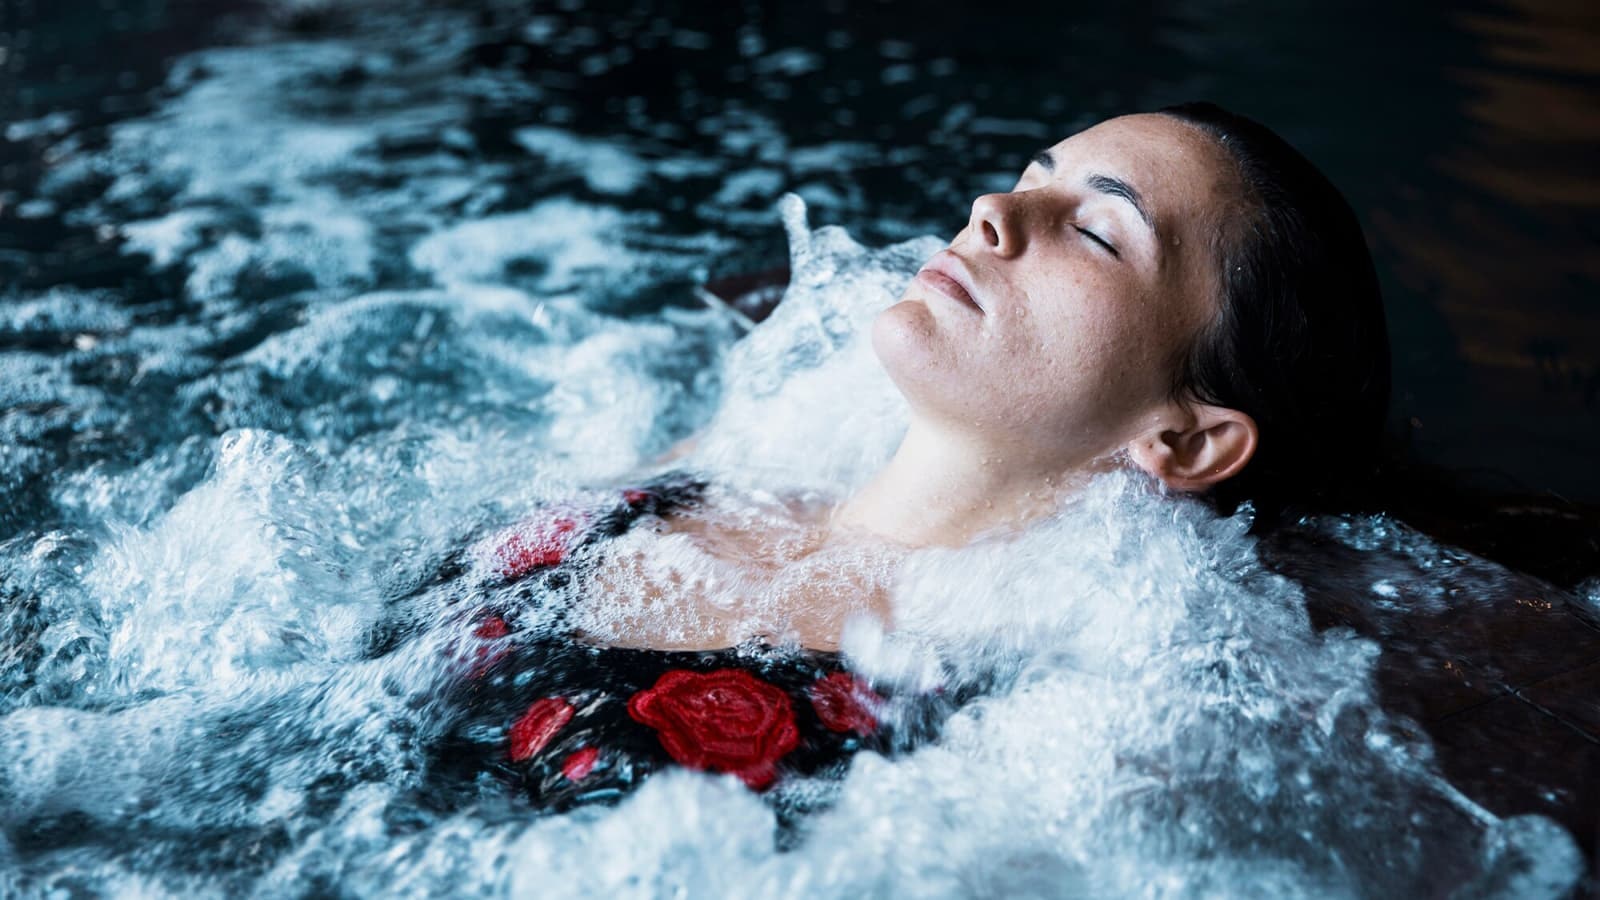 Kalt duschen nach dem Sport. Bild von einer Frau, die ein heißes Bad nimmt, weil das kalt Duschen im Anschluss noch wirksamer ist.